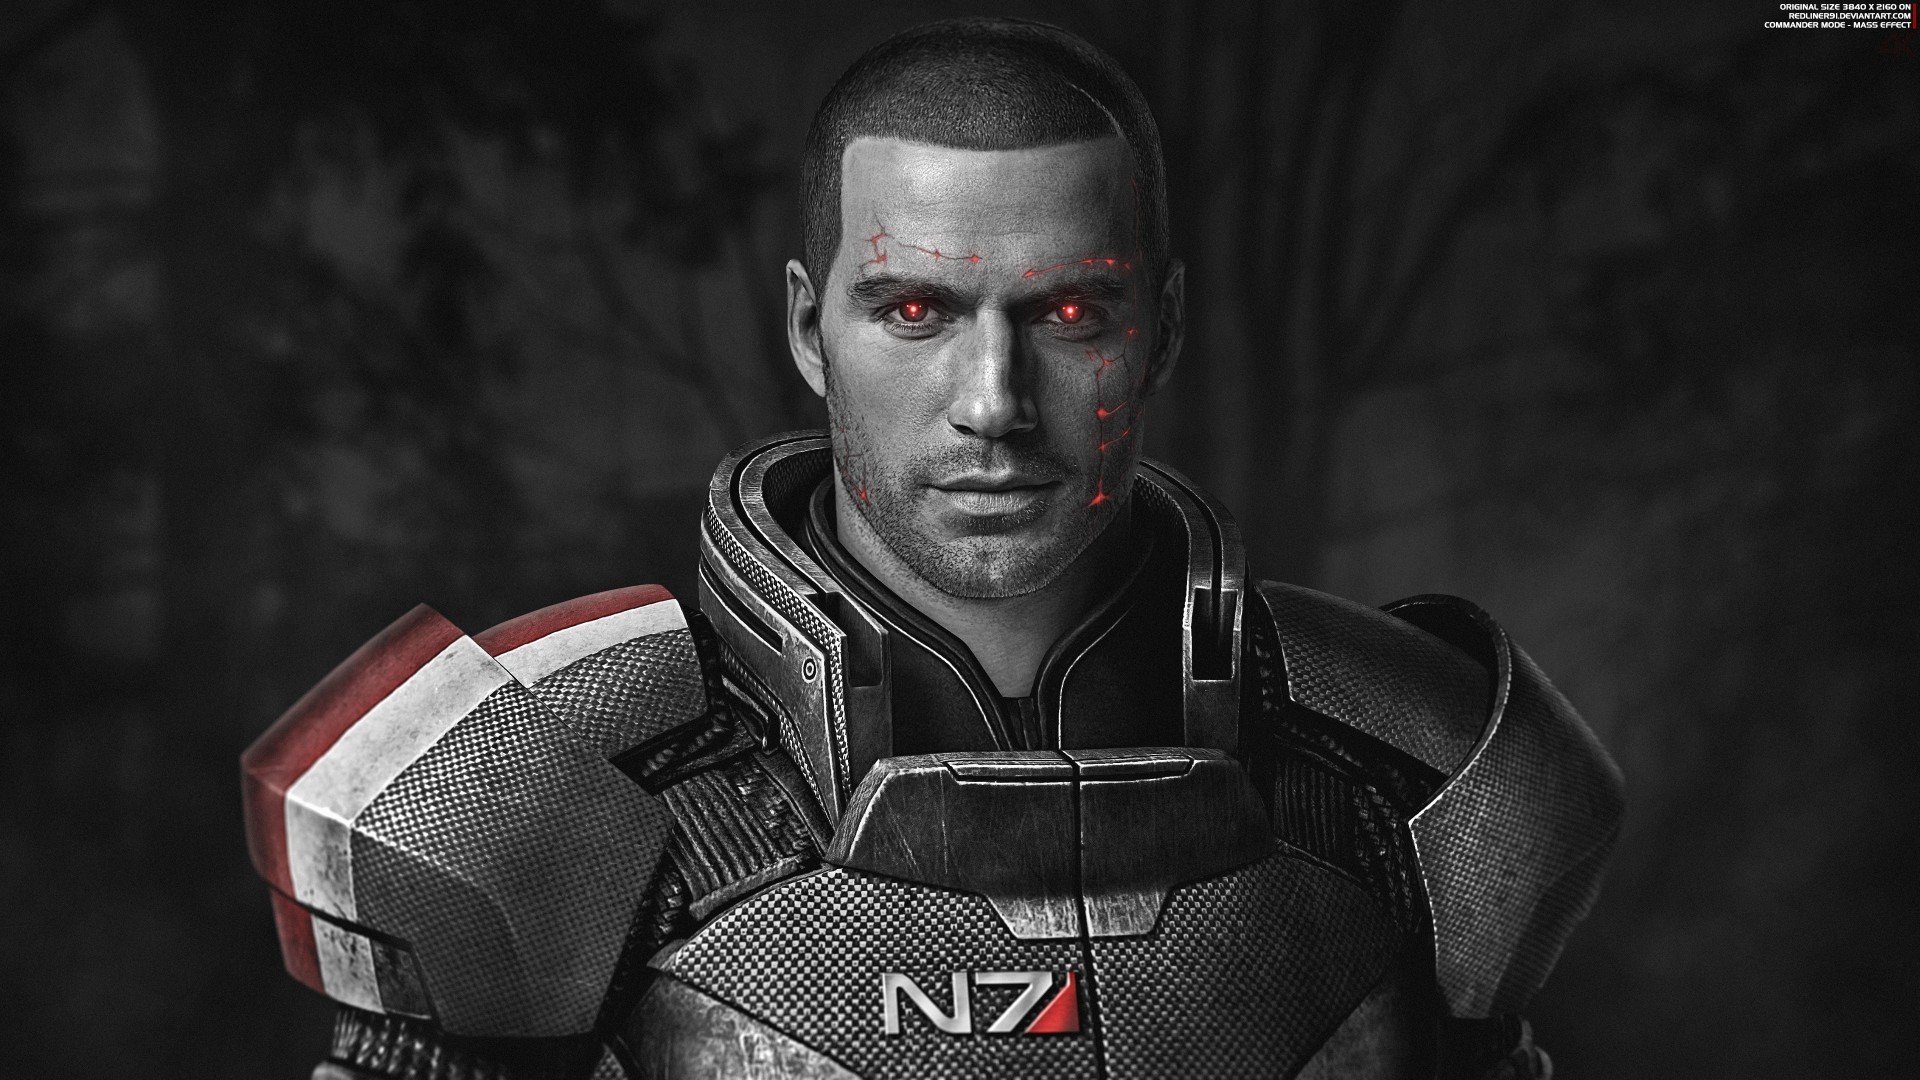 Как бы выглядел Генри Кавилл в образе капитана Шепарда из Mass Effect